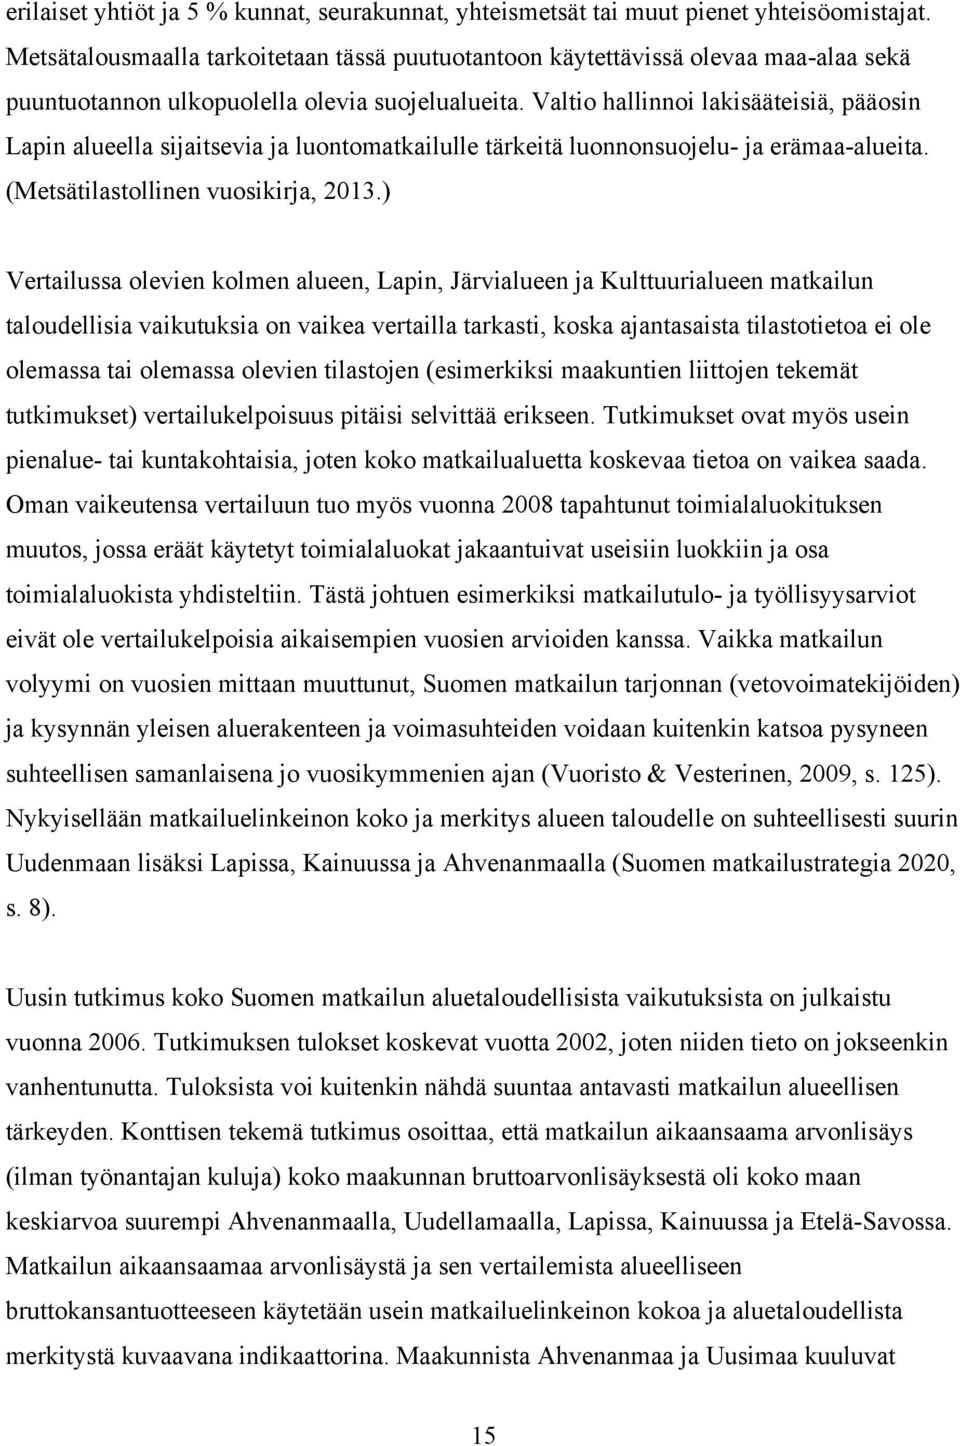 Valtio hallinnoi lakisääteisiä, pääosin Lapin alueella sijaitsevia ja luontomatkailulle tärkeitä luonnonsuojelu- ja erämaa-alueita. (Metsätilastollinen vuosikirja, 2013.